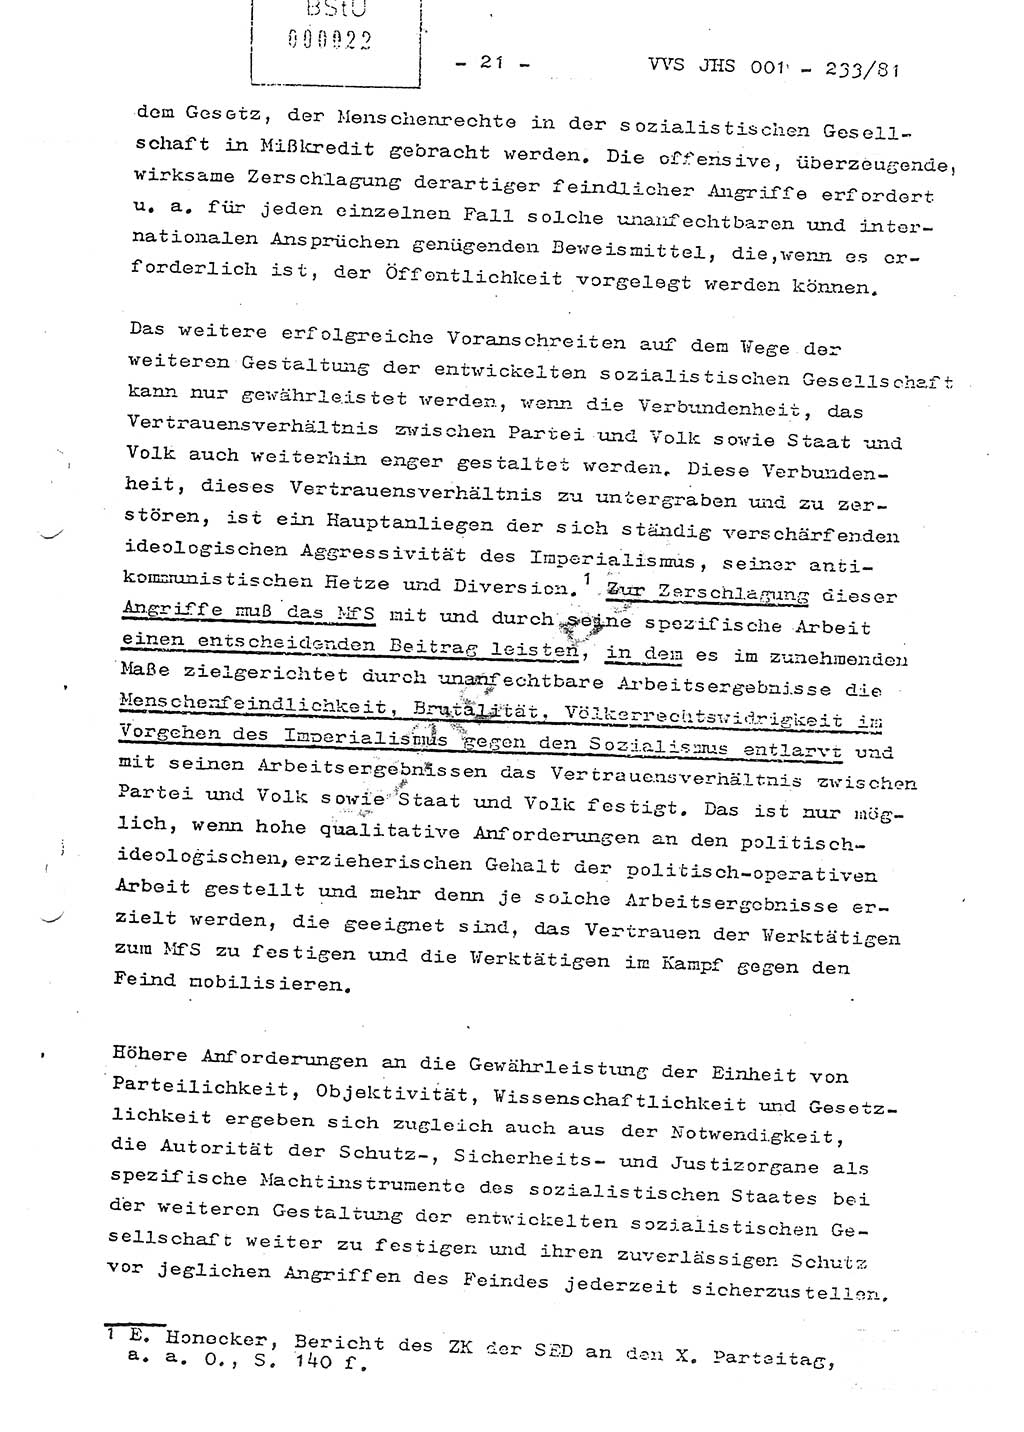 Dissertation Oberstleutnant Horst Zank (JHS), Oberstleutnant Dr. Karl-Heinz Knoblauch (JHS), Oberstleutnant Gustav-Adolf Kowalewski (HA Ⅸ), Oberstleutnant Wolfgang Plötner (HA Ⅸ), Ministerium für Staatssicherheit (MfS) [Deutsche Demokratische Republik (DDR)], Juristische Hochschule (JHS), Vertrauliche Verschlußsache (VVS) o001-233/81, Potsdam 1981, Blatt 22 (Diss. MfS DDR JHS VVS o001-233/81 1981, Bl. 22)